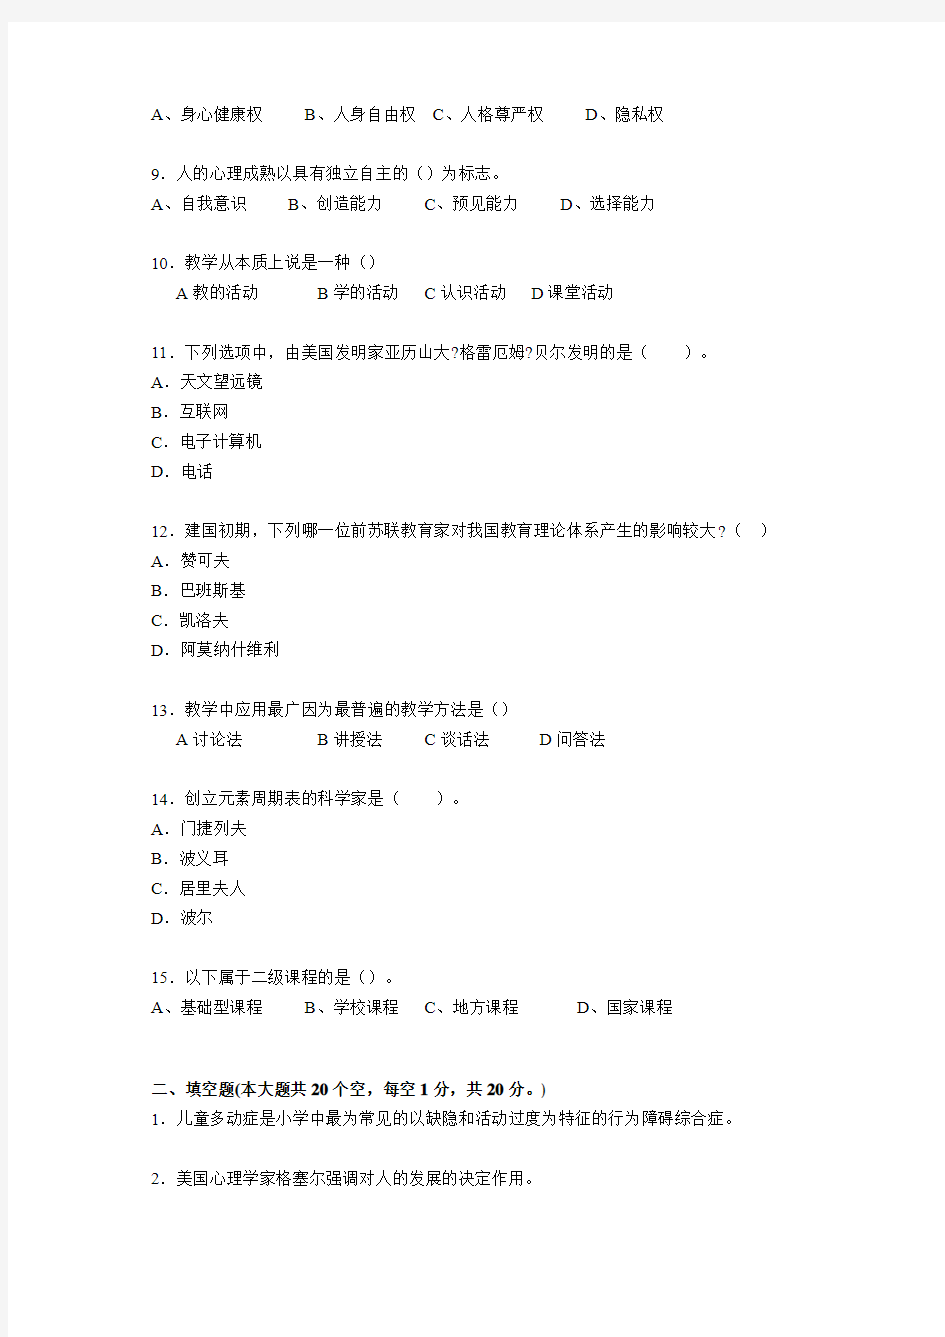 重庆省2016年教师资格证考试《综合素质》考试试题